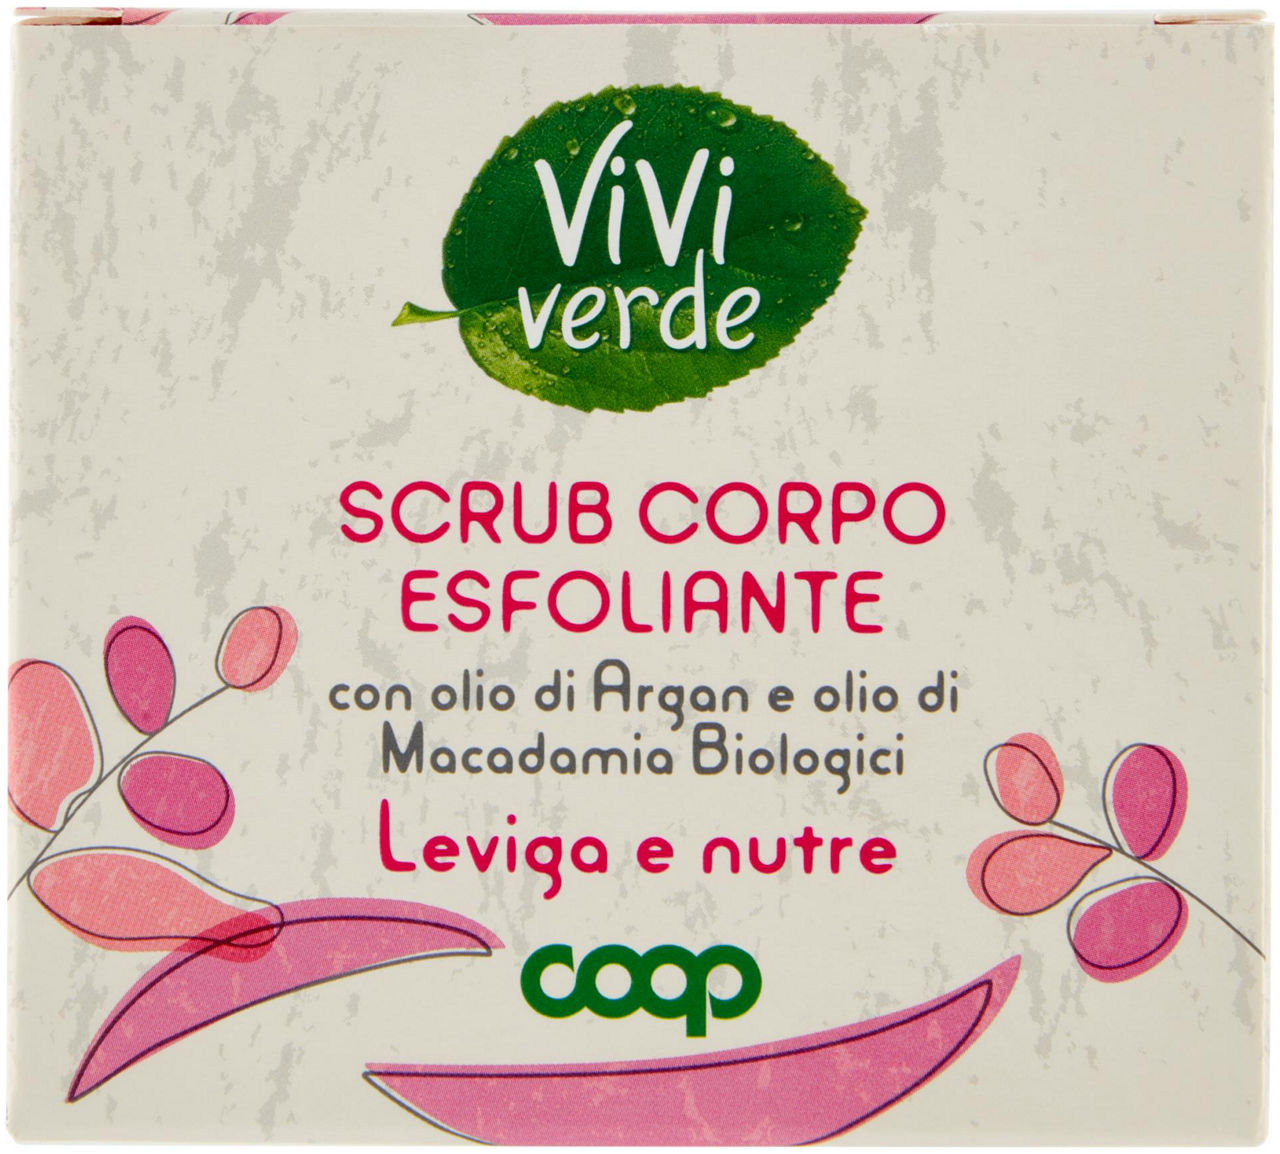 Scrub Corpo Esfoliante Vivi Verde 400 g - 0